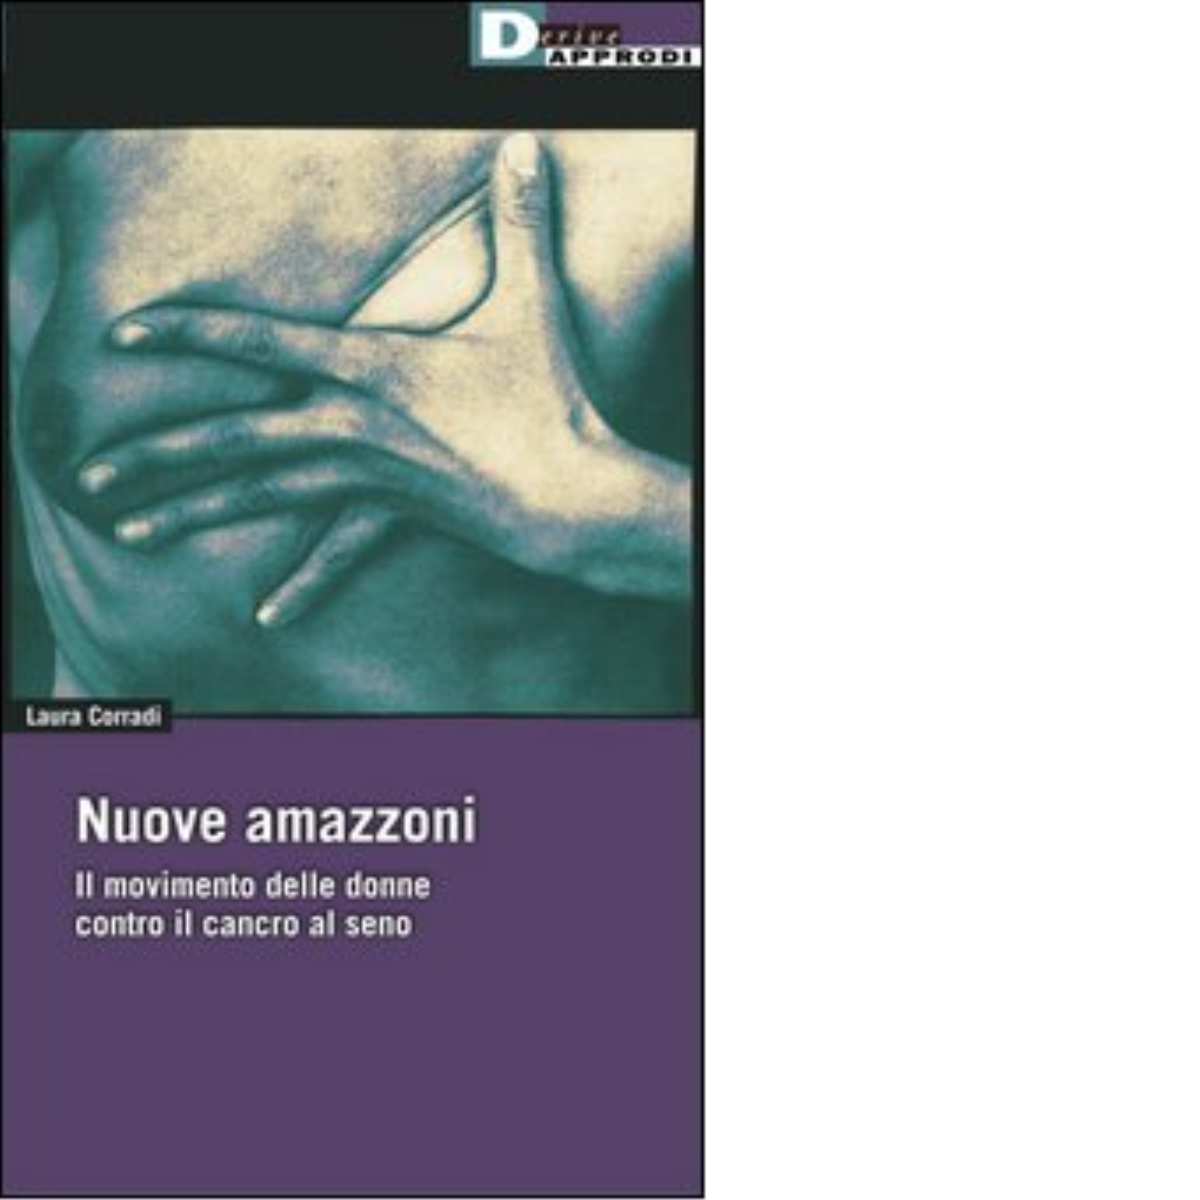 NUOVE AMAZZONI. di LAURA CORRADI - DeriveApprodi editore, 2004 libro usato